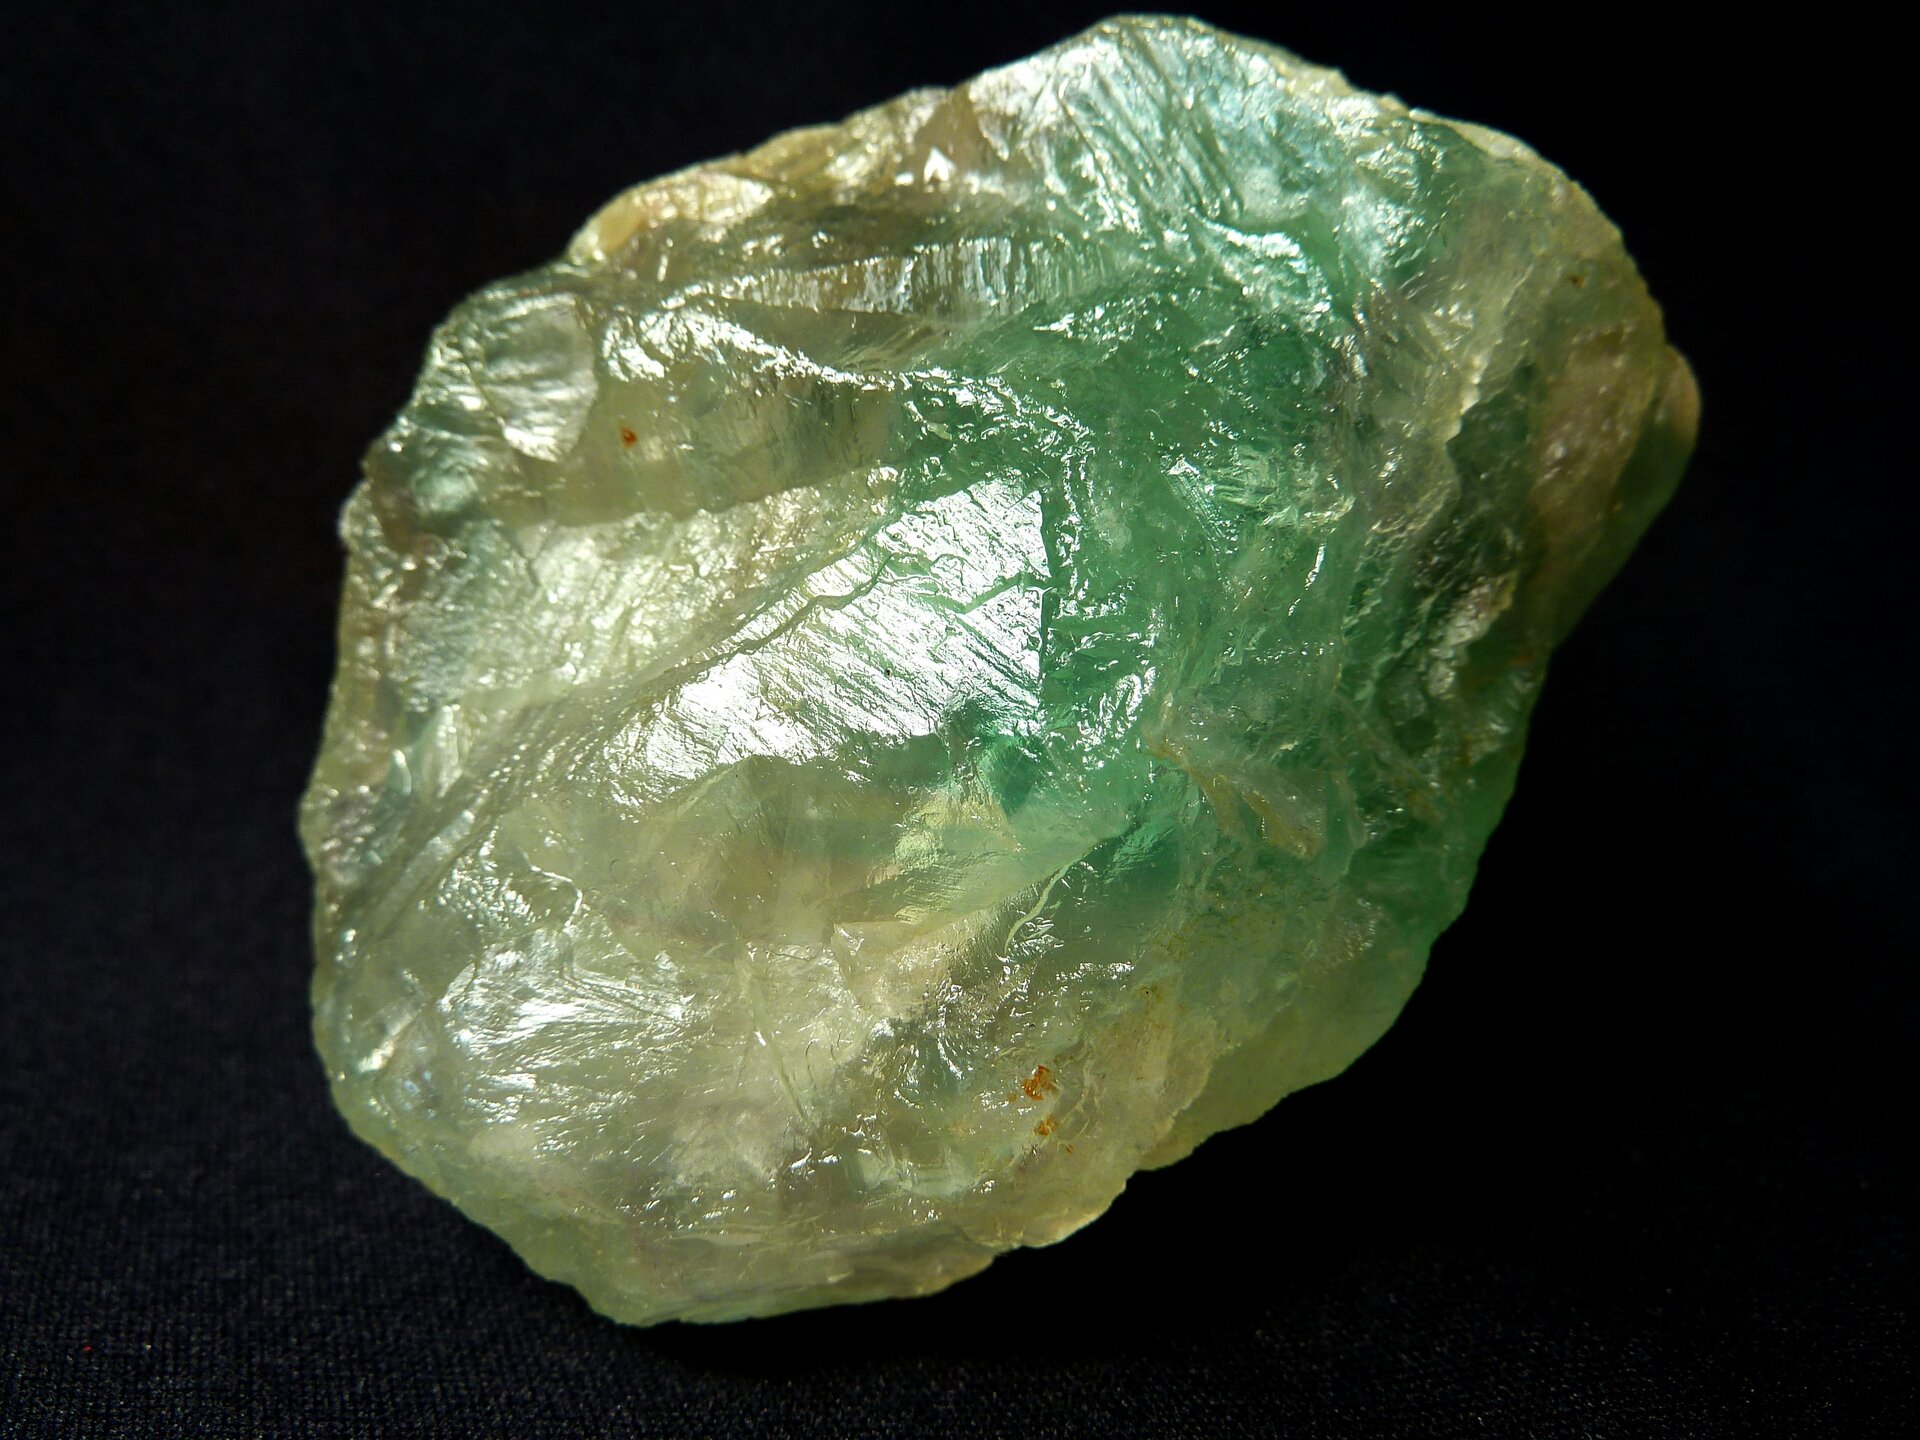 Ilustracja przedstawia fluoryt, kształtem przypomina kamień o śliskiej powierzchni, przypominającej szkło. Ma zielonkawy kolor. 